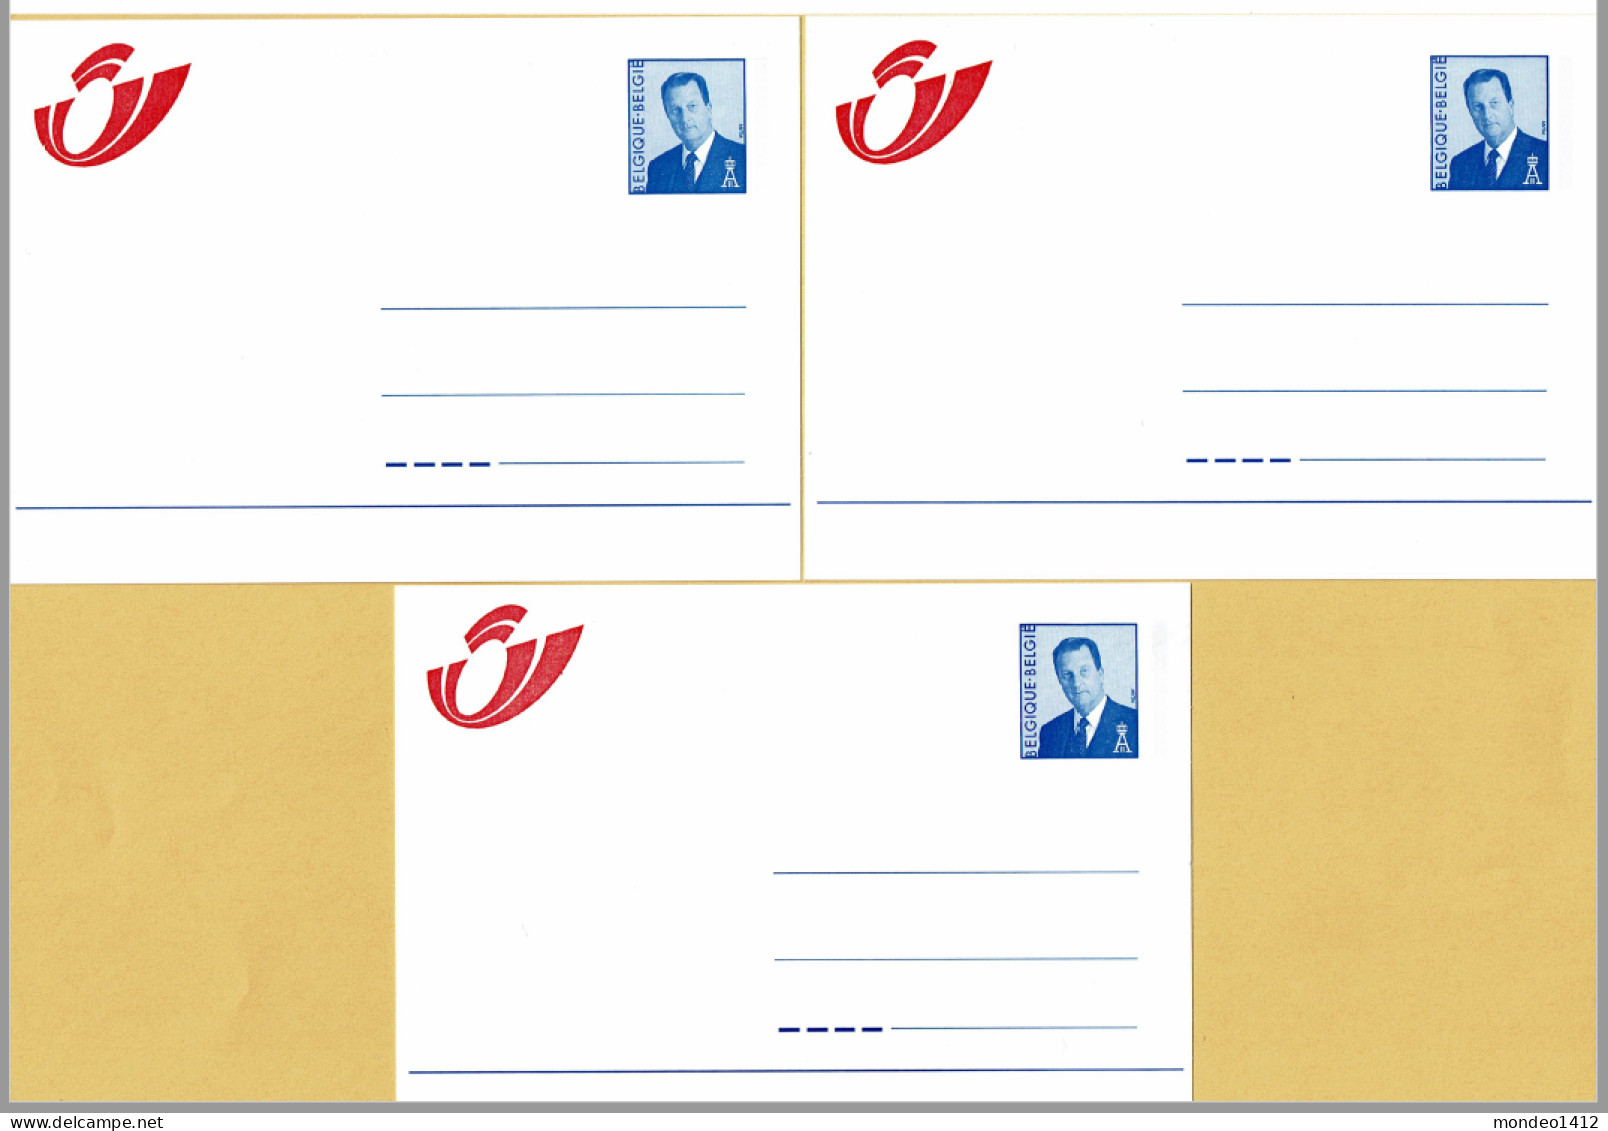 1998 - Briefkaarten - Mutapost Nieuw Postlogo - Adresverandering - Compleet N-F-D - Addr. Chang.